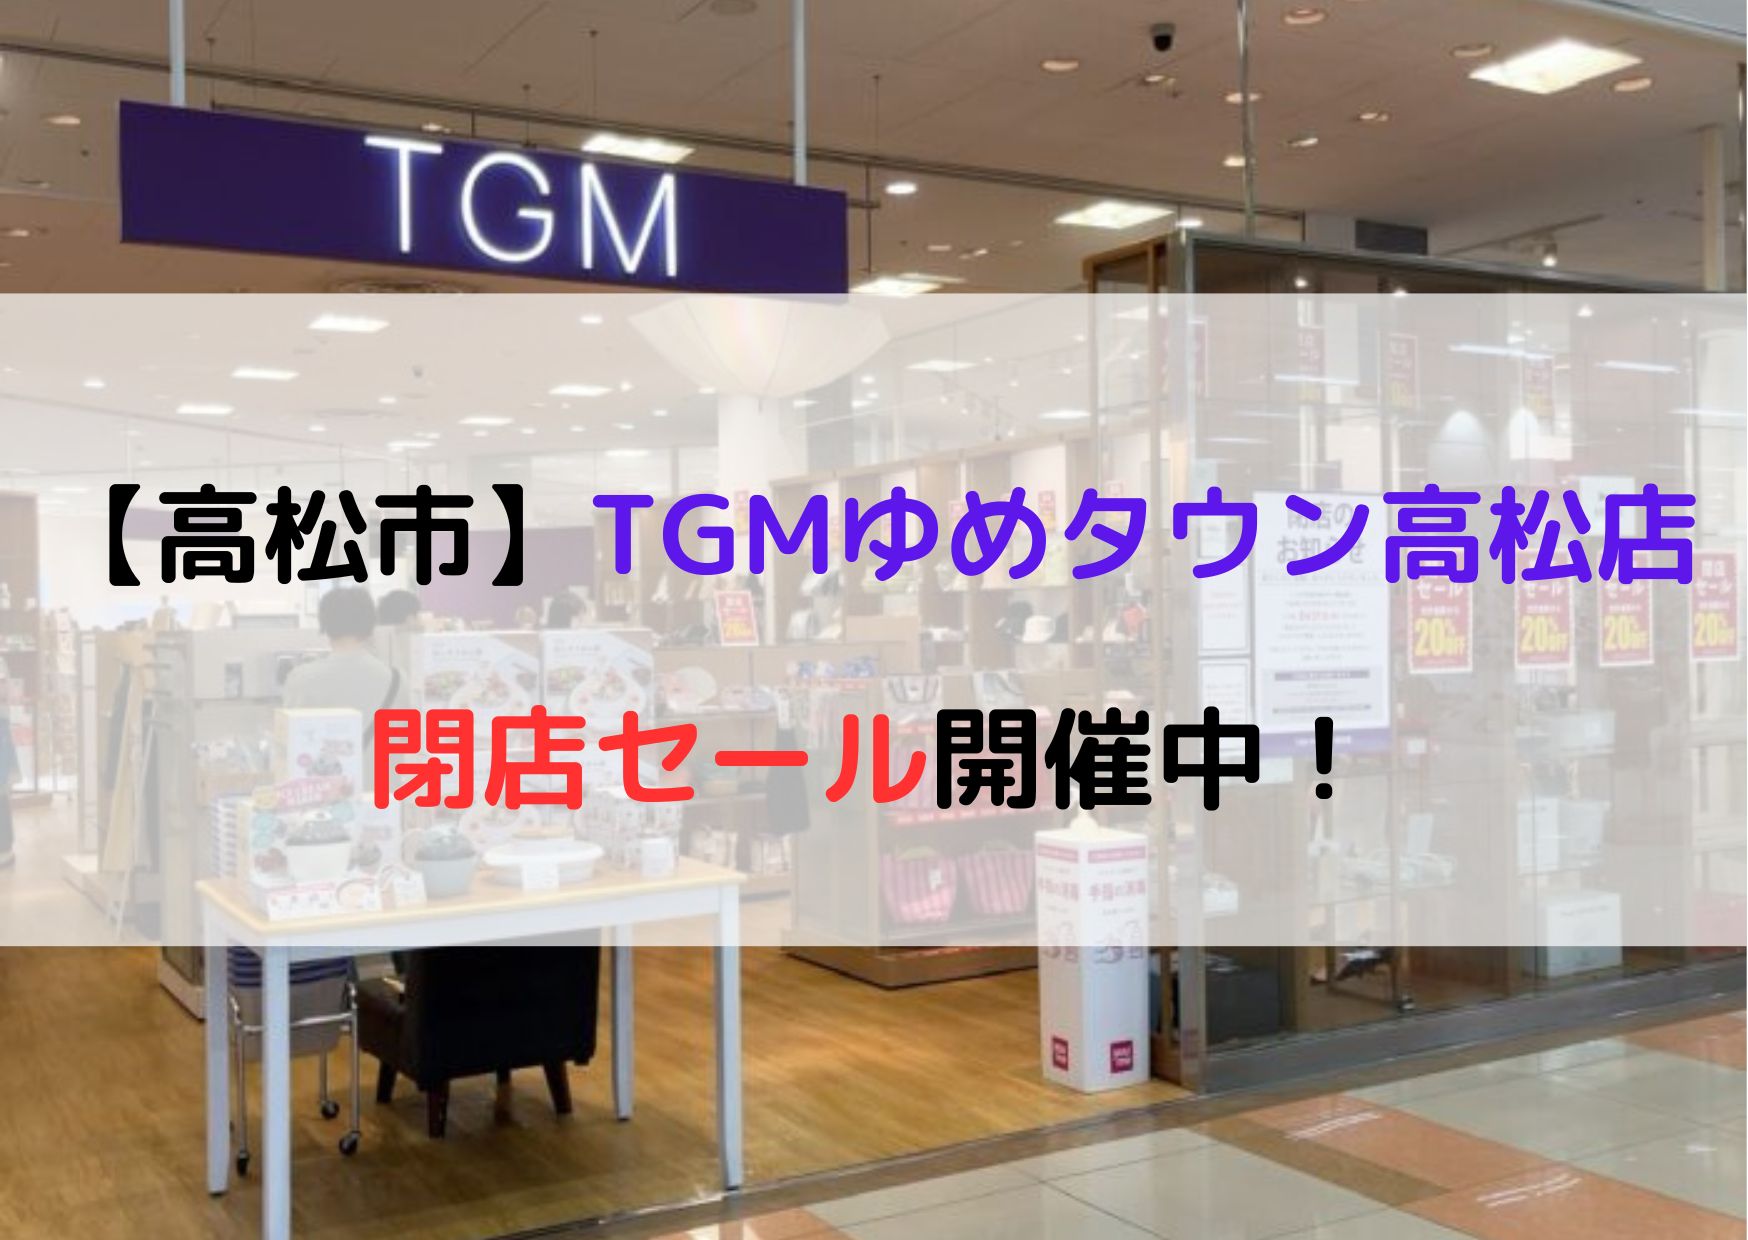 TGM 高松 閉店